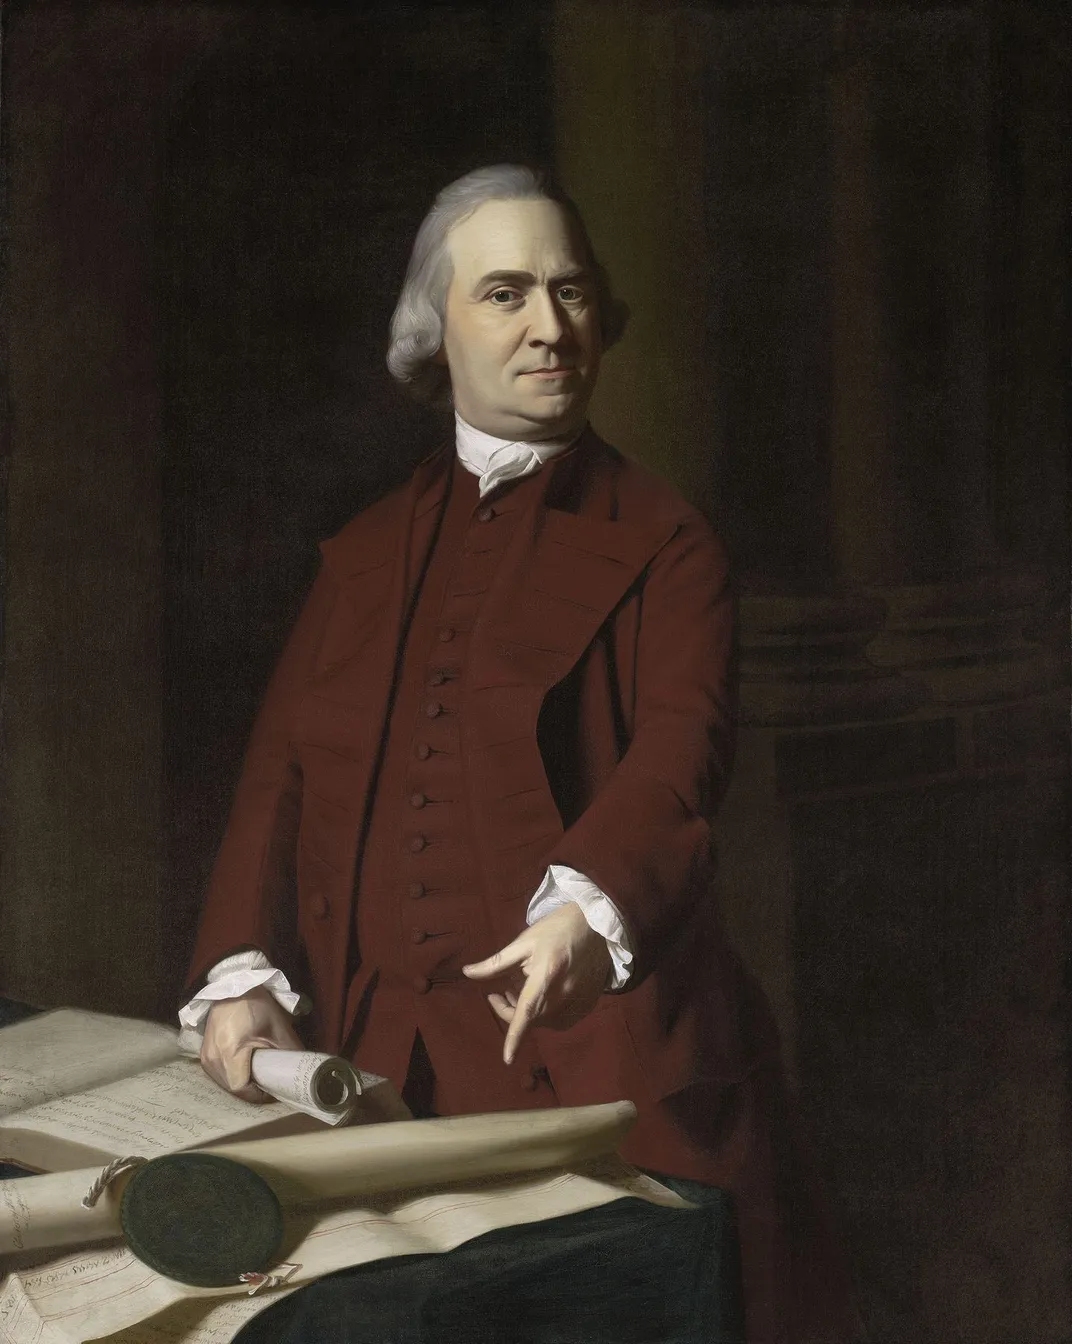 A portrait of Samuel Adams by John Singleton Copley